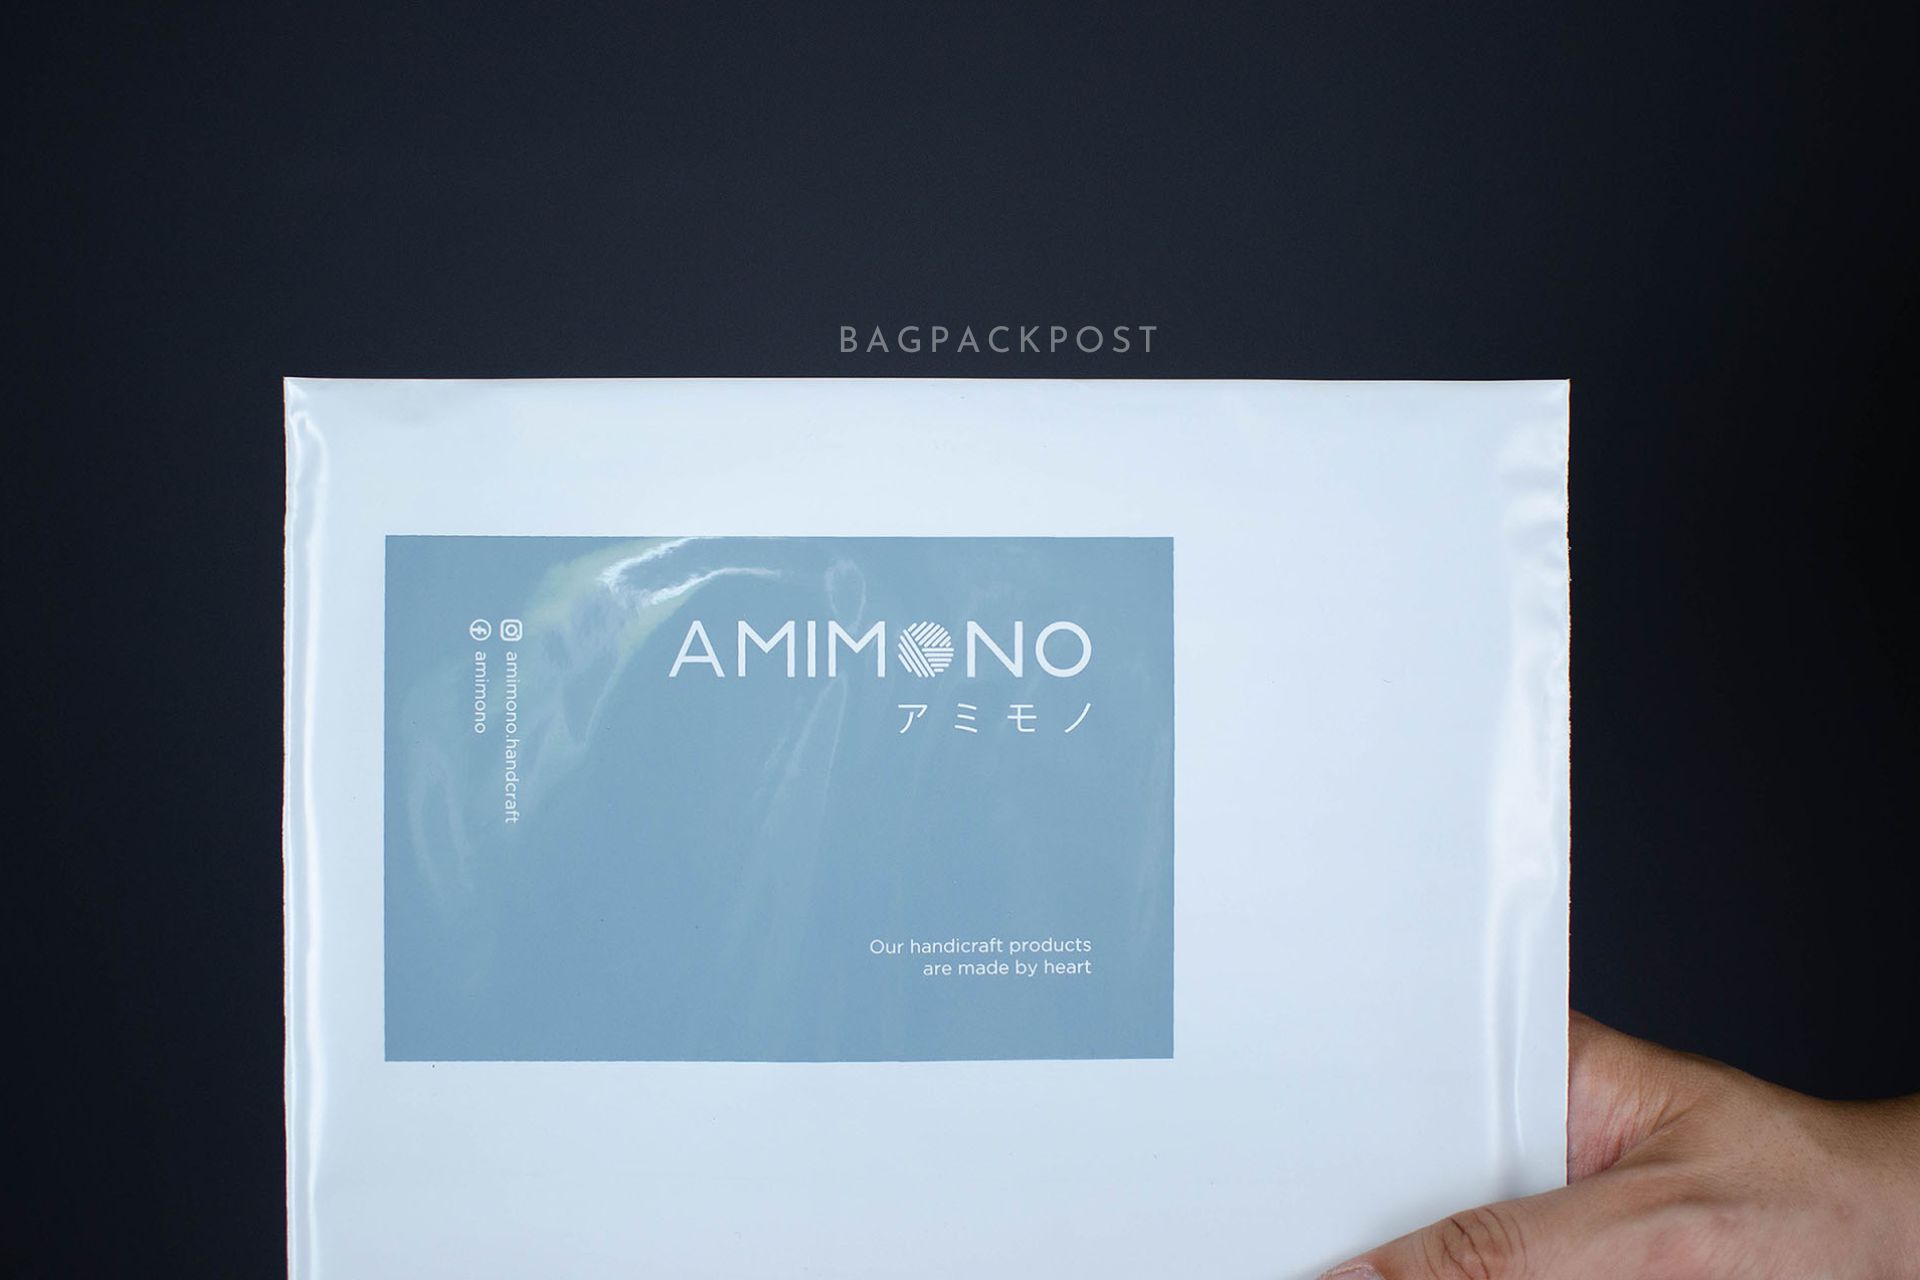 ผลิตถุงไปรษณีย์ ซองไปรษณีย์พิมพ์ลาย AMIMONO ซองไปรษณีย์สีขาว ถุงไปรษณีย์พิมพ์ลาย 2 BagPackPost